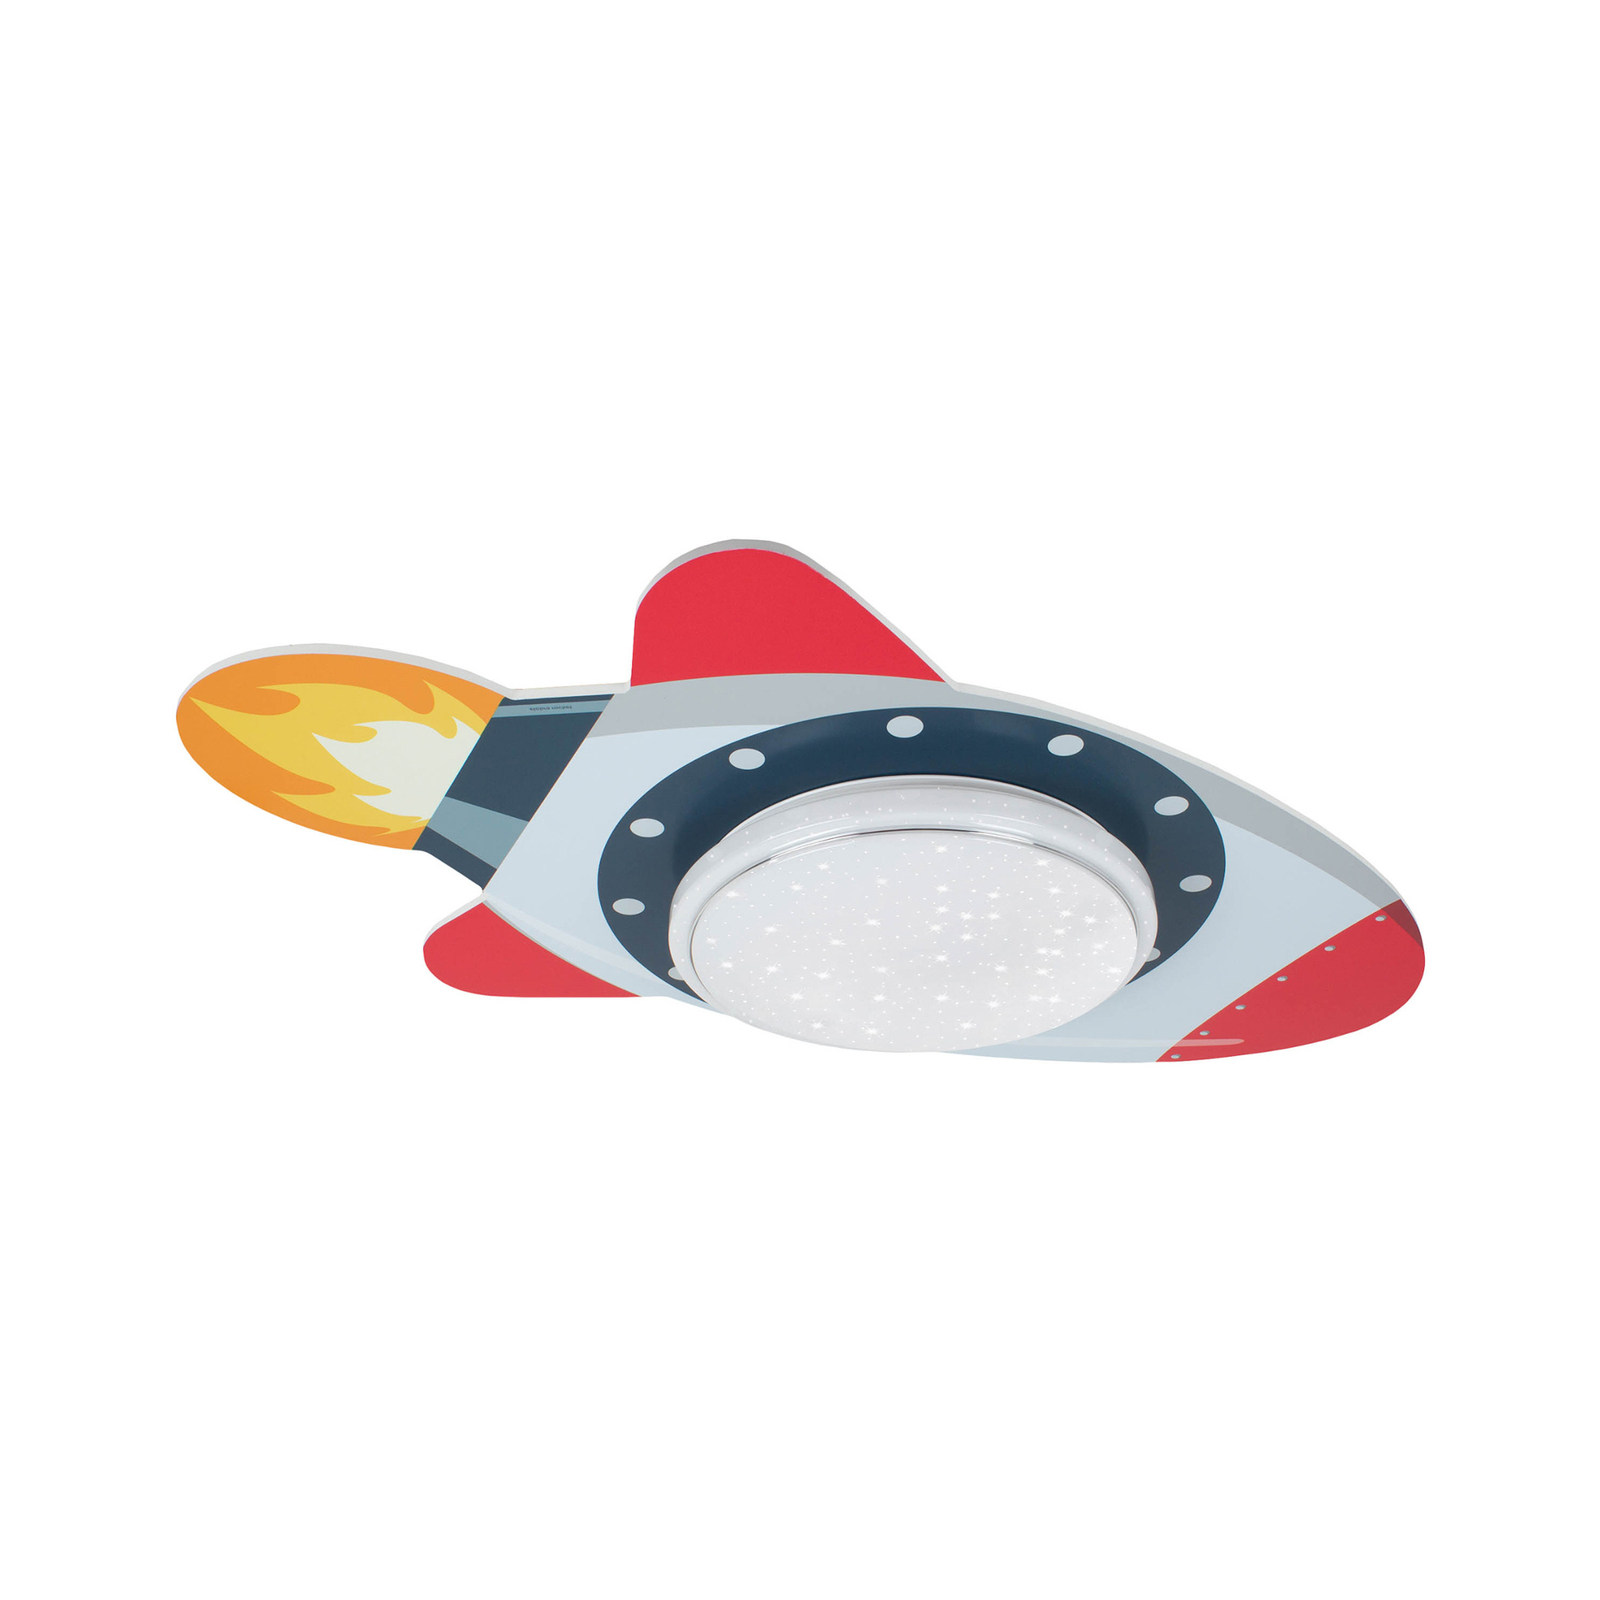 LED ceiling light Rakete Starlight